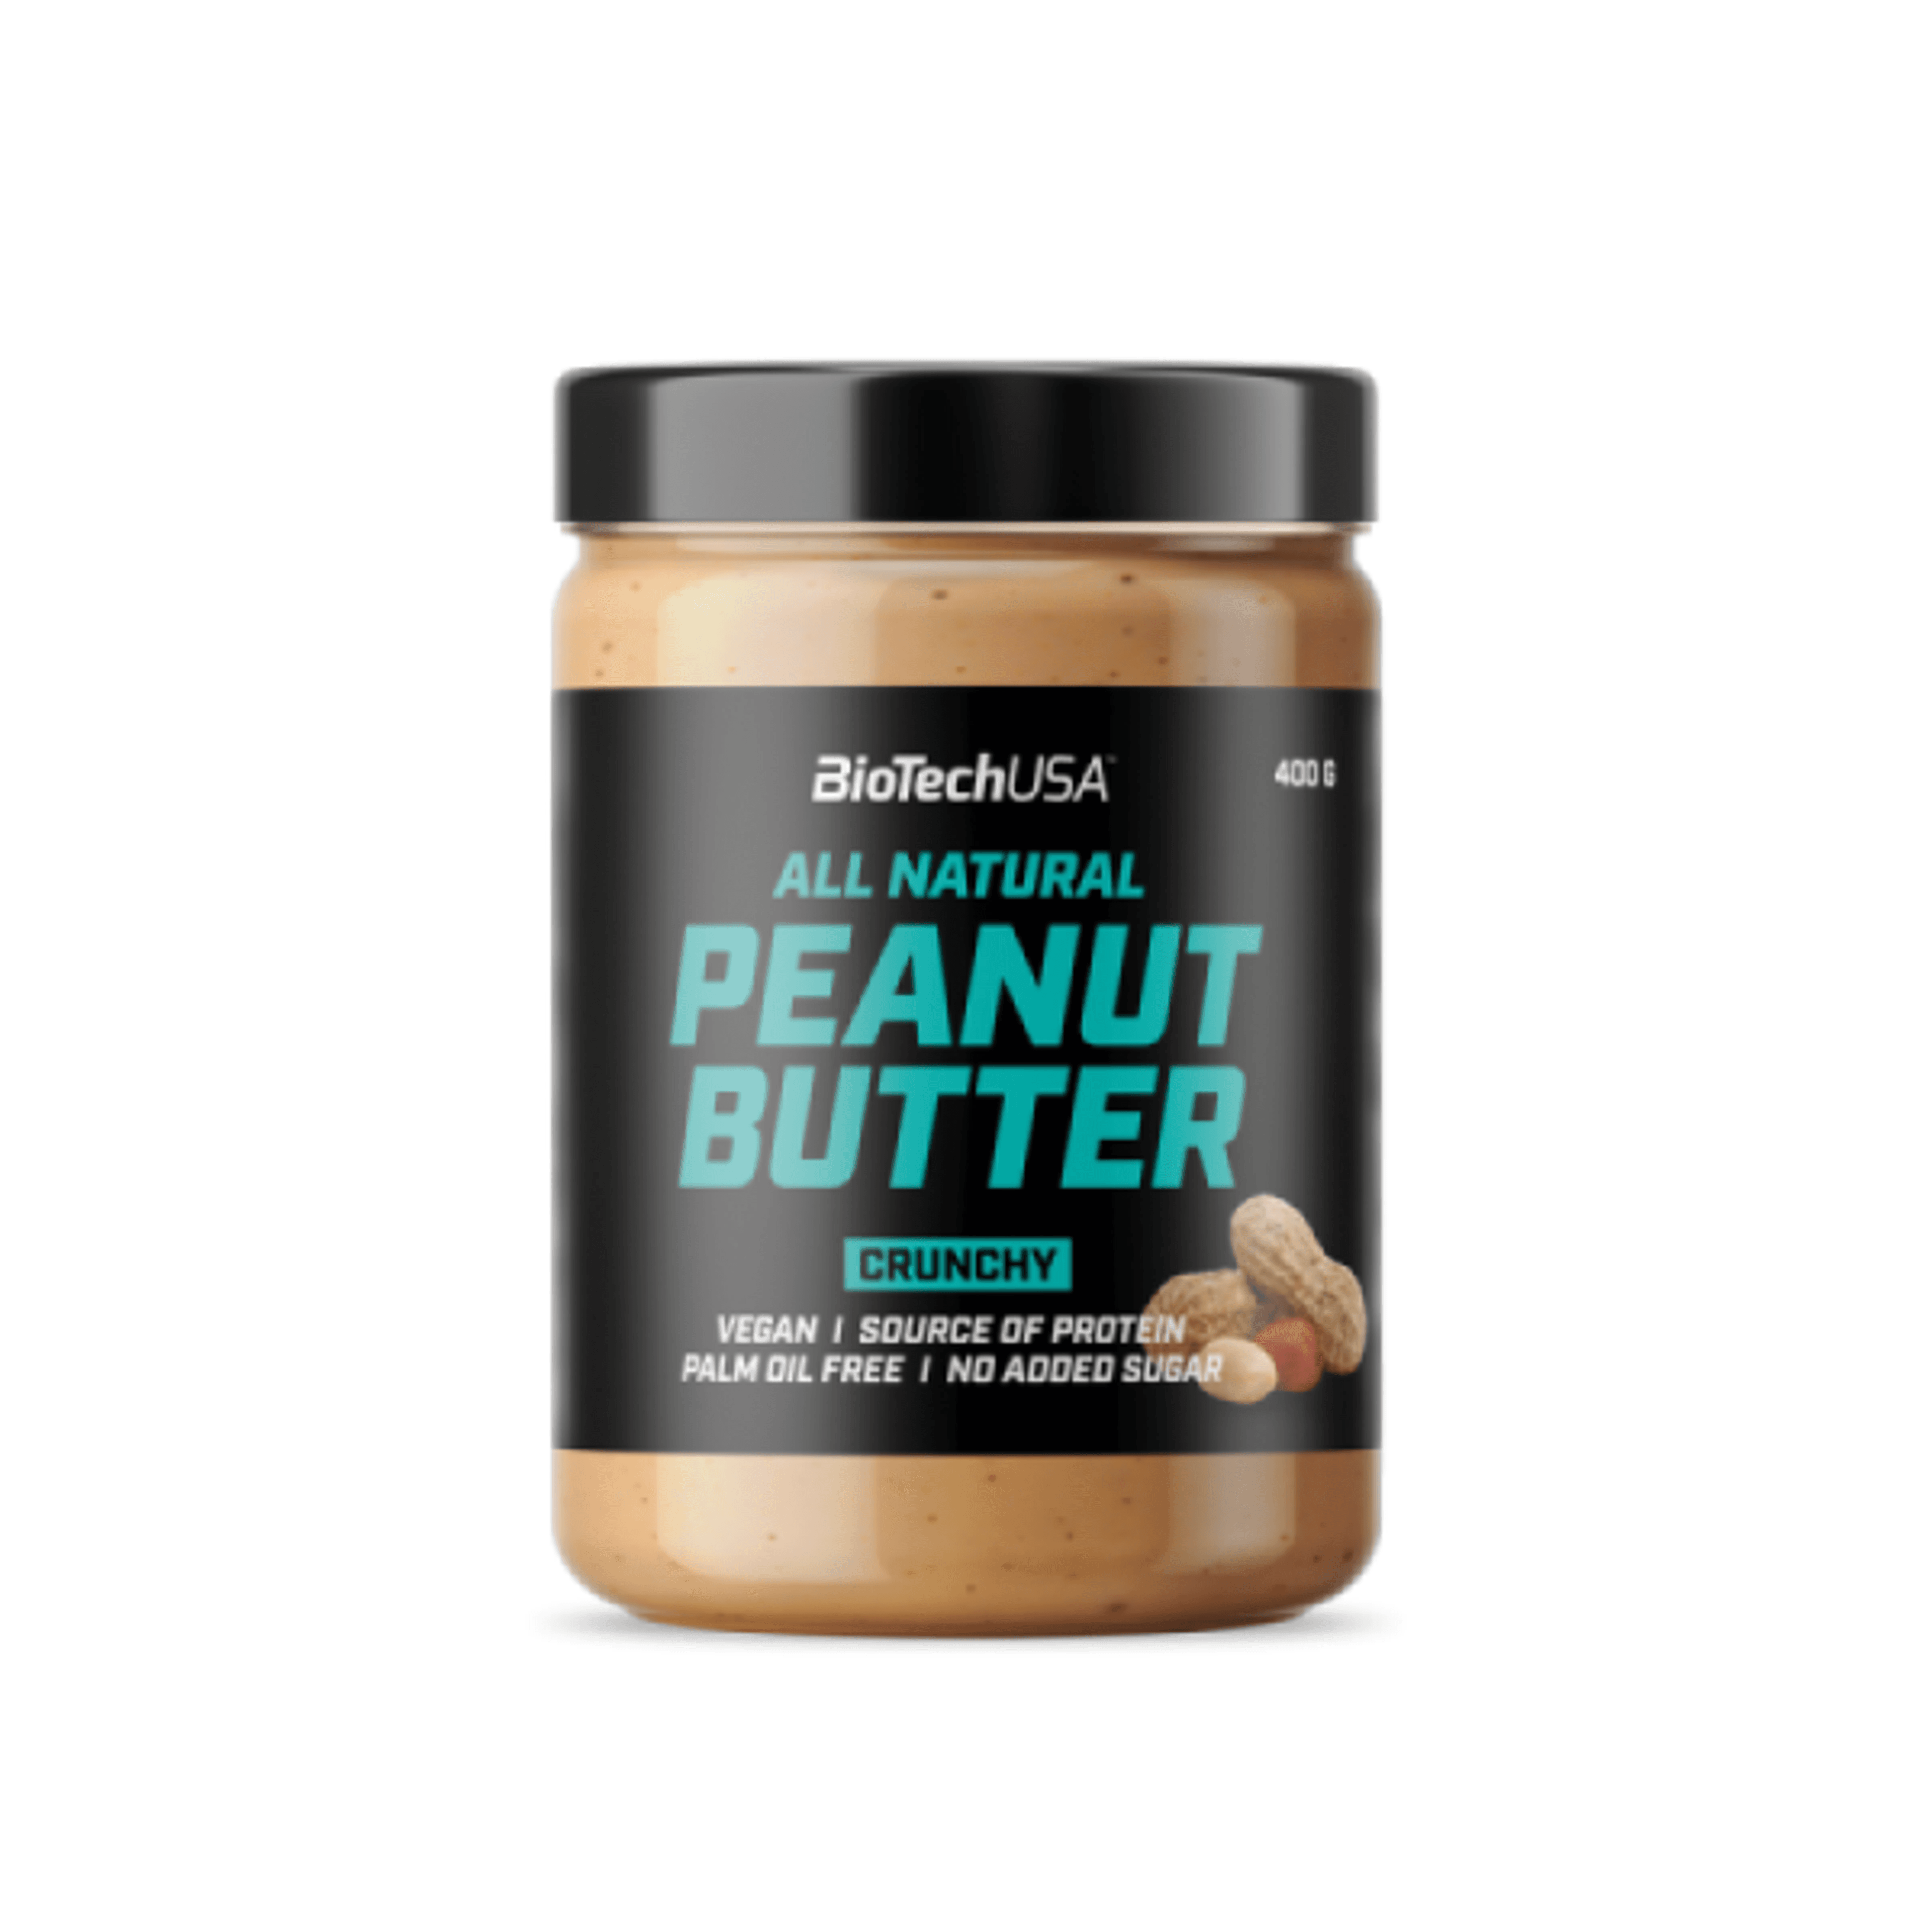 BioTechUSA Peanut Butter crunchy - 400 g